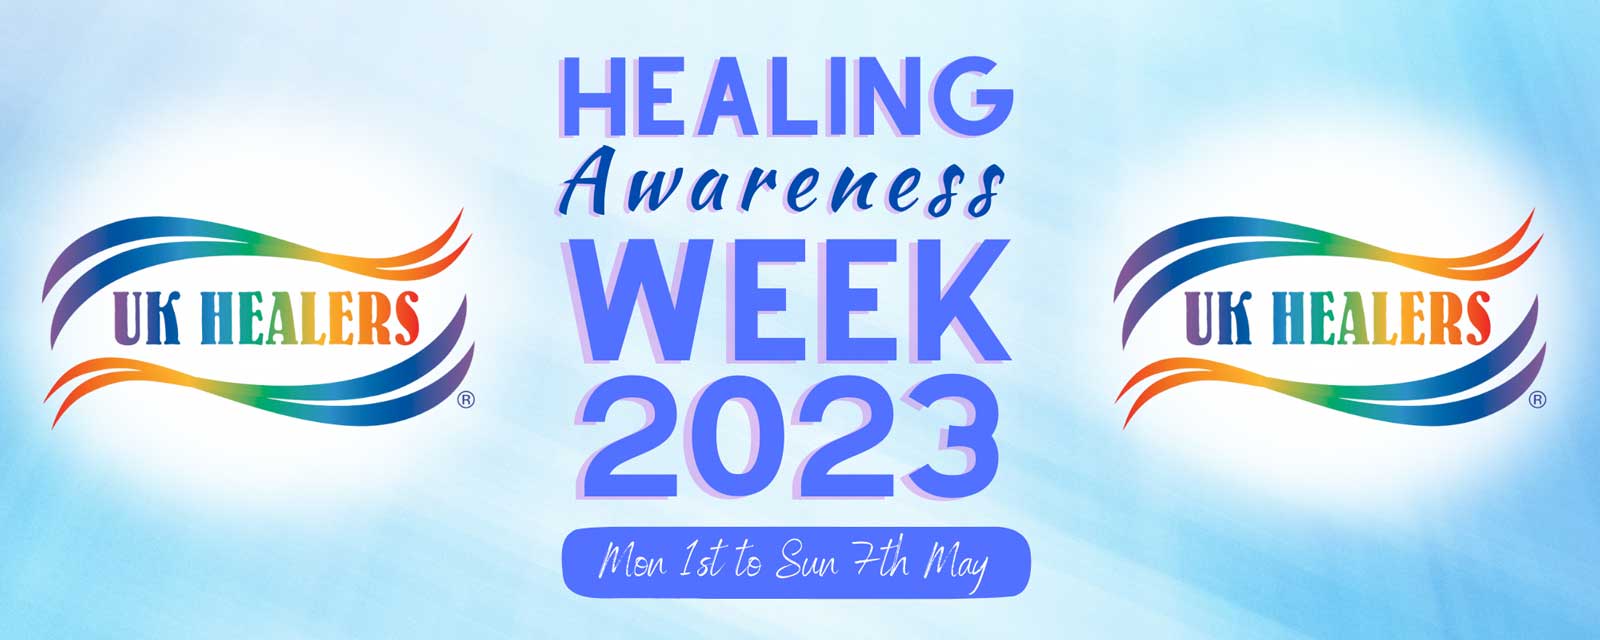 healing awareness week 2023 banner